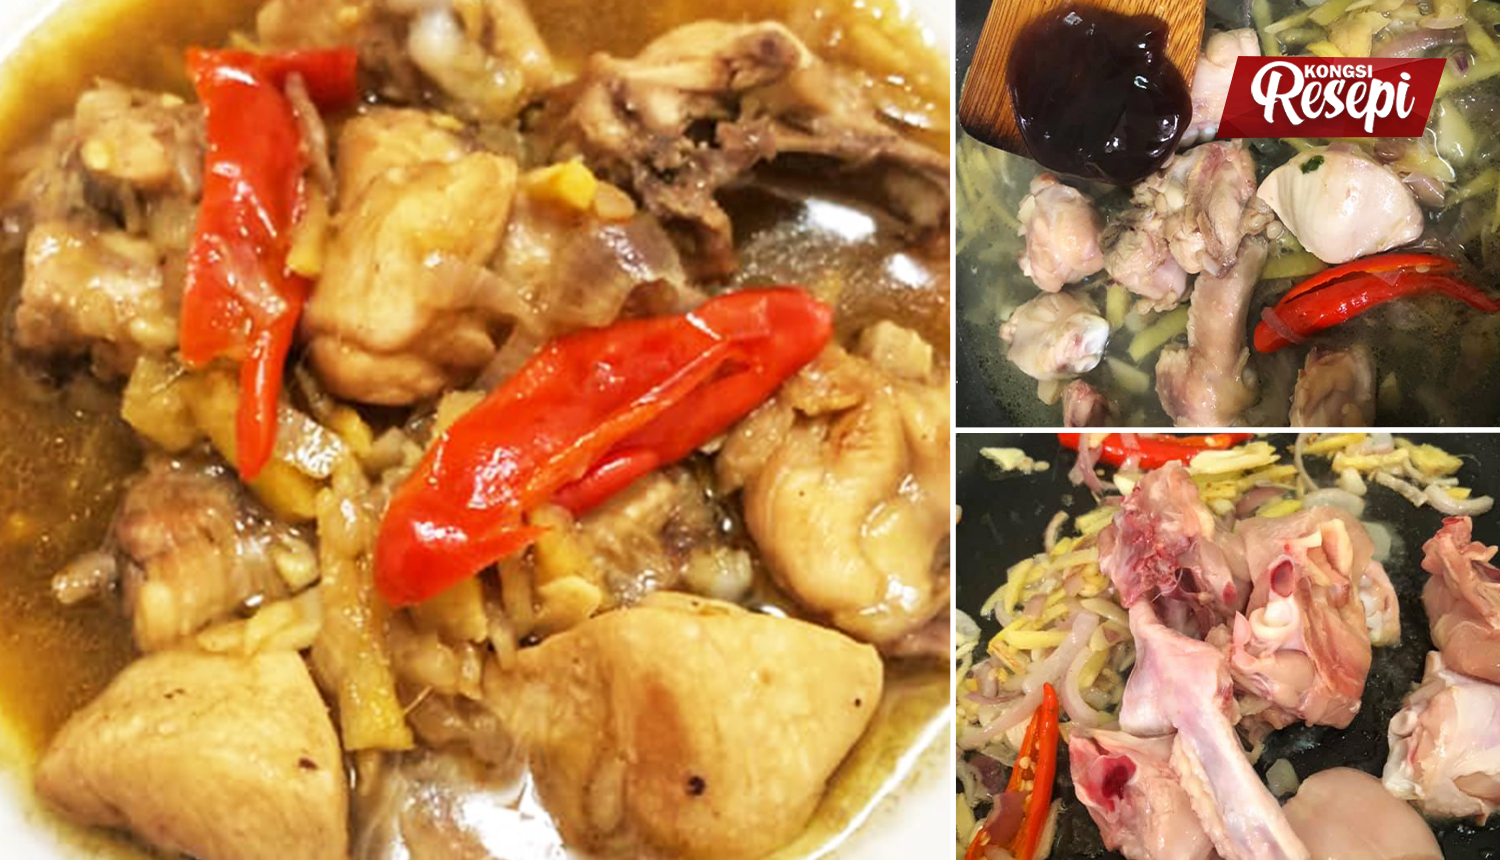 Resepi Ayam Masak Halia Yang Simple Je Nak Buat Tapi Sedap Masakan Sihat Untuk Keluarga Kongsi Resepi